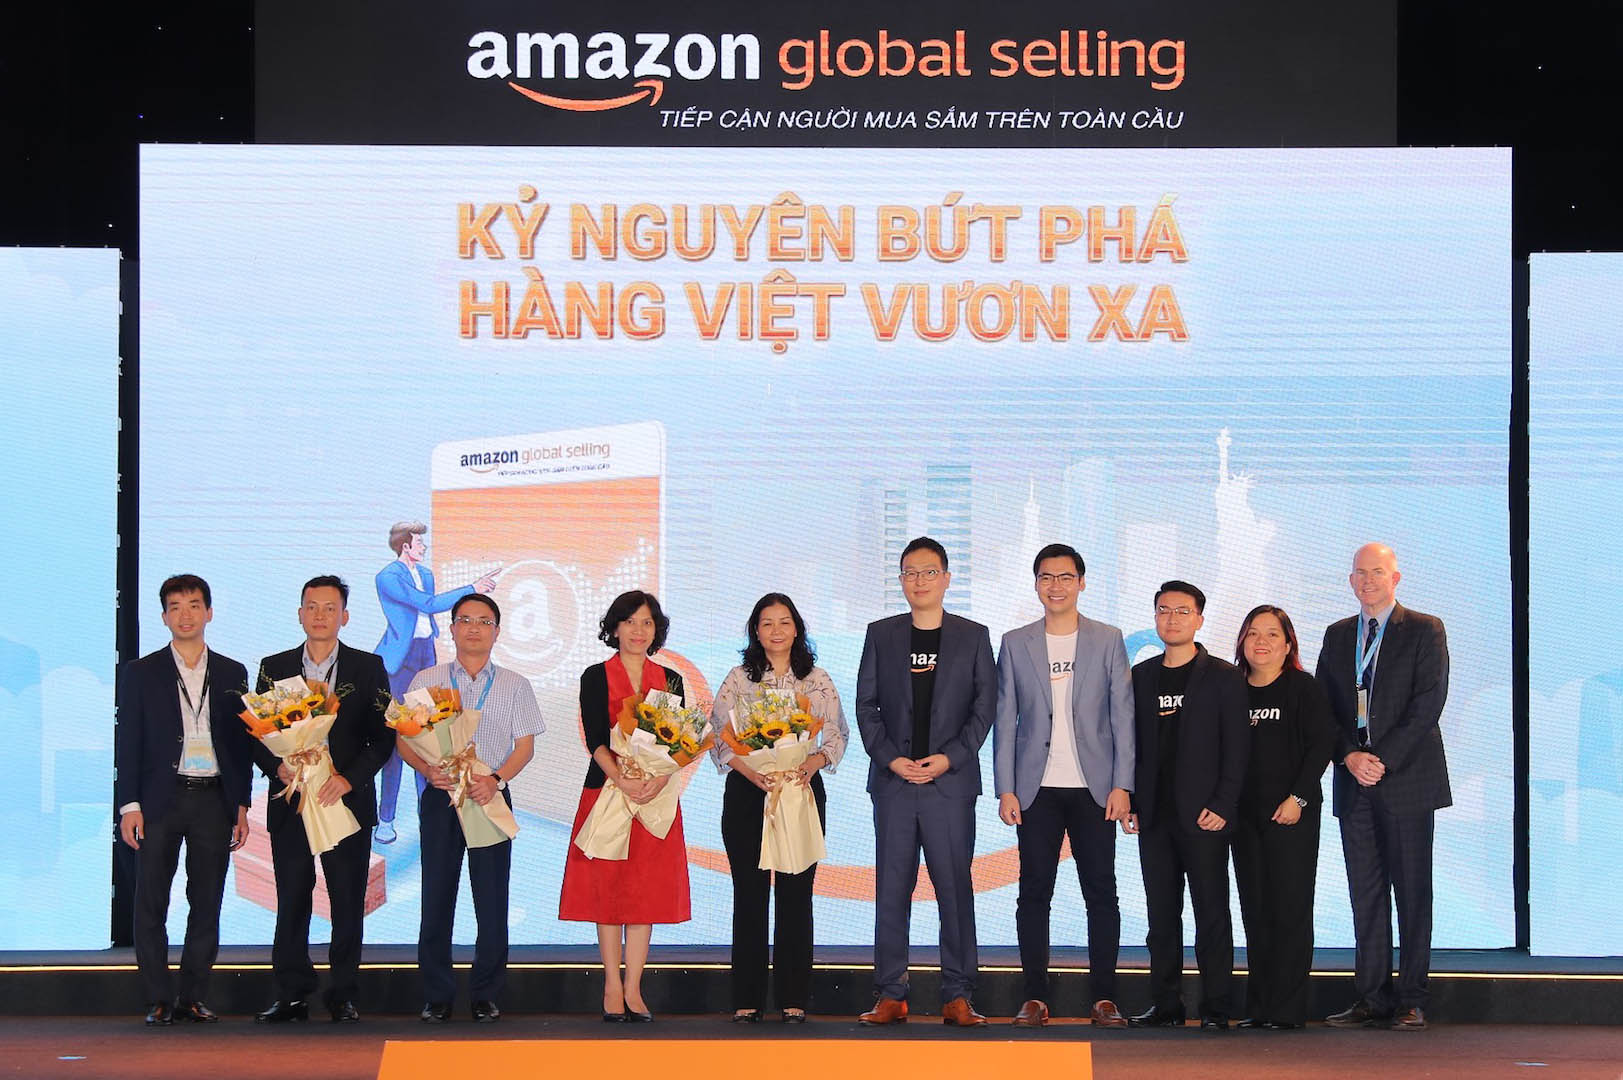 Amazon công bố mở rộng hợp tác với cục thương mại điện tử và kinh tế số (IDEA), đồng thời chính thức khởi xướng chương trình “Kỷ nguyên bứt phá, hàng Việt vươn xa”